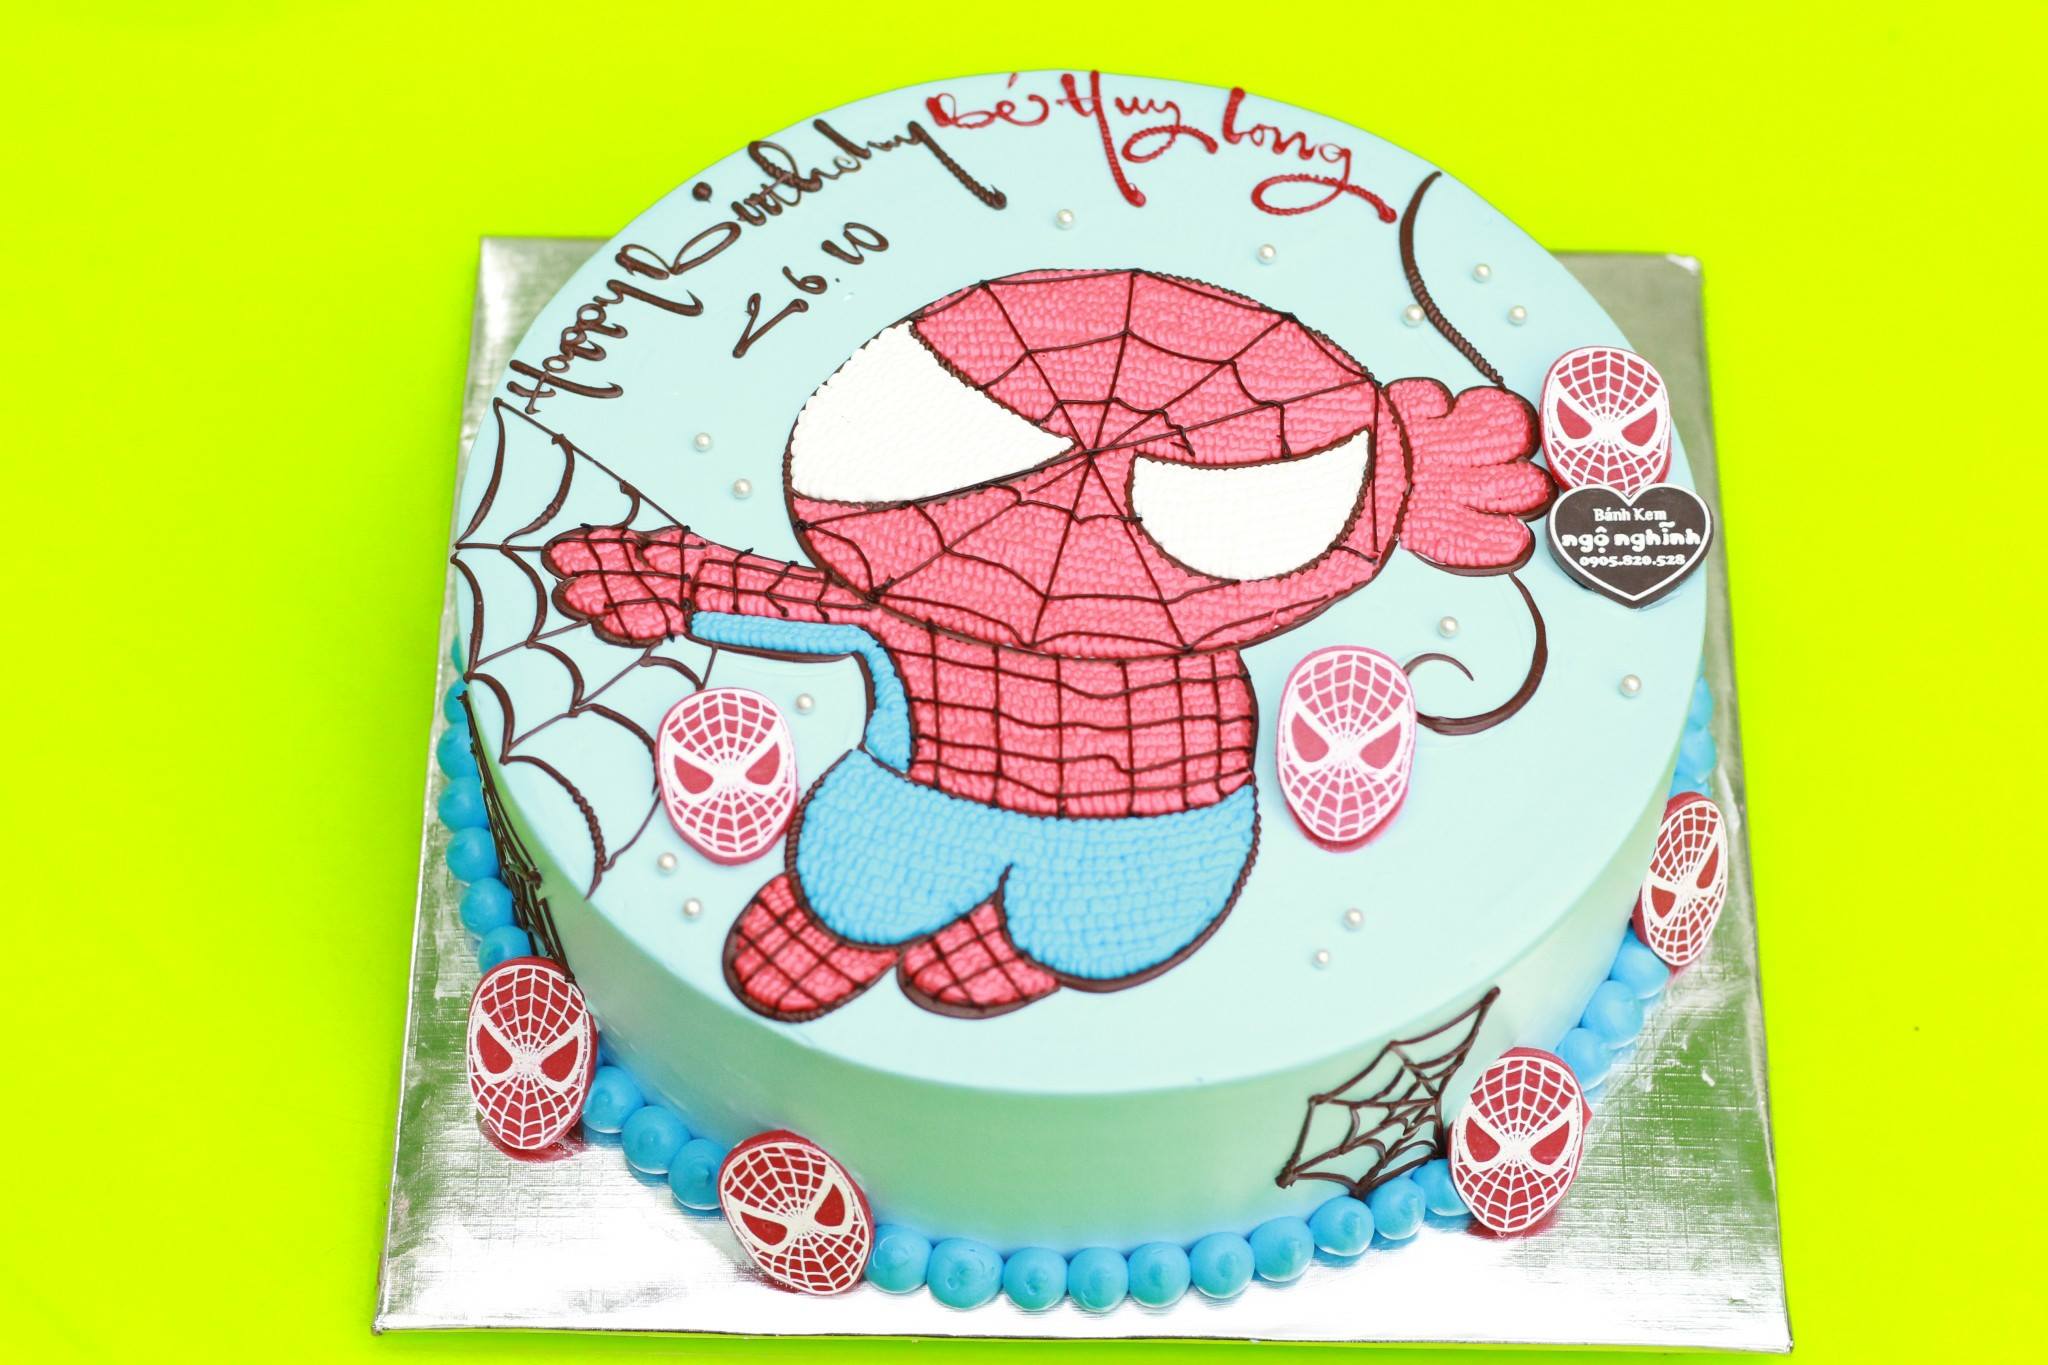 Bánh kem sinh nhật vẽ hình người nhện: Nếu bạn muốn một chiếc bánh sinh nhật cao cấp hơn, bánh kem sinh nhật vẽ hình người nhện là lựa chọn thích hợp. Với các chi tiết được chăm chút, chiếc bánh này sẽ làm hài lòng cả những khách hàng khó tính nhất. Hãy đến cửa hàng của chúng tôi để đặt hàng ngay!